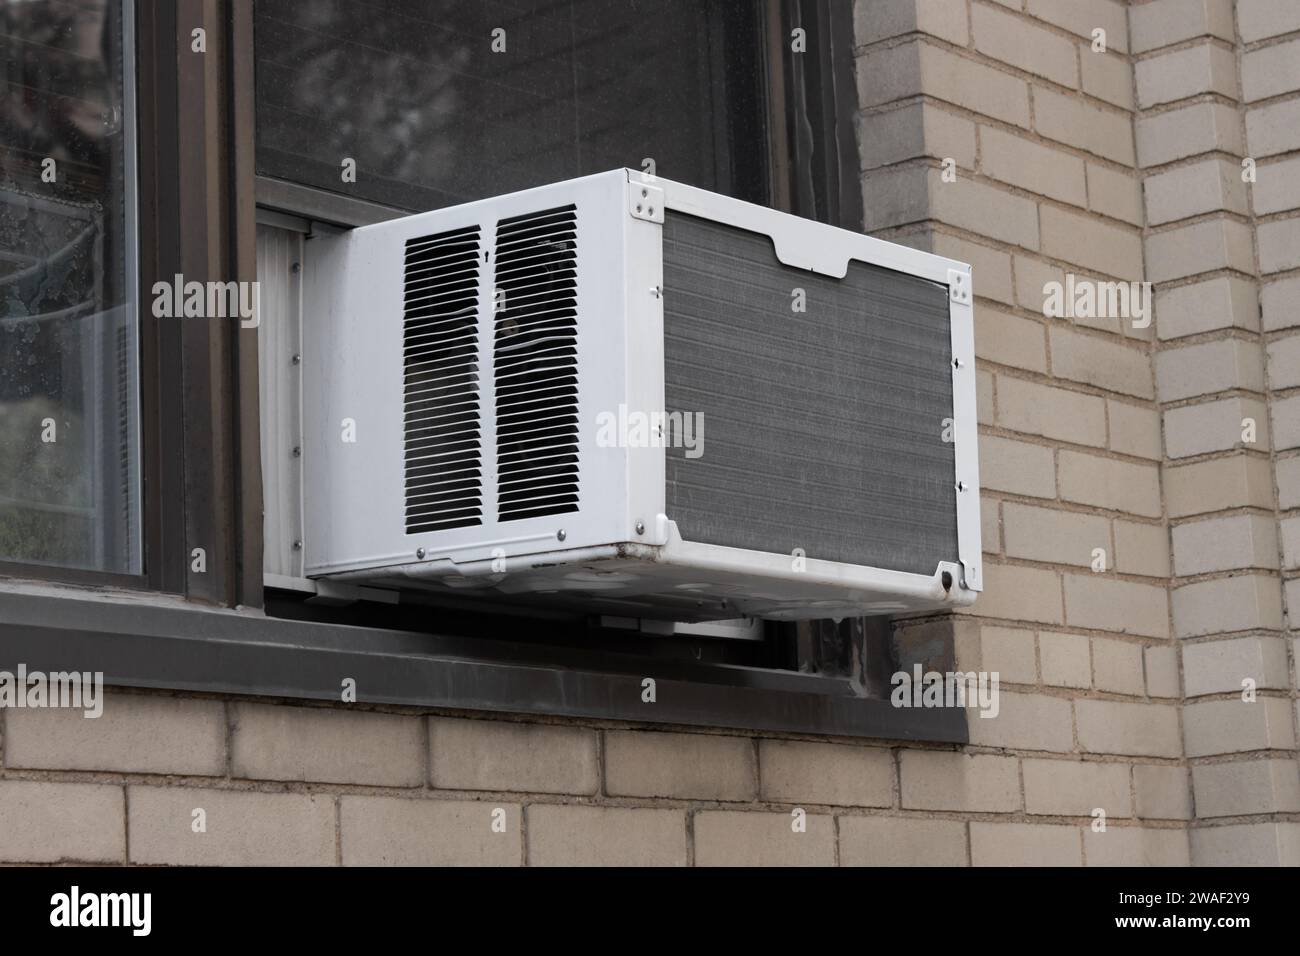 vista esterna dell'unità finestra dell'aria condizionata estrusa dal davanzale di un edificio in mattoni beige Foto Stock